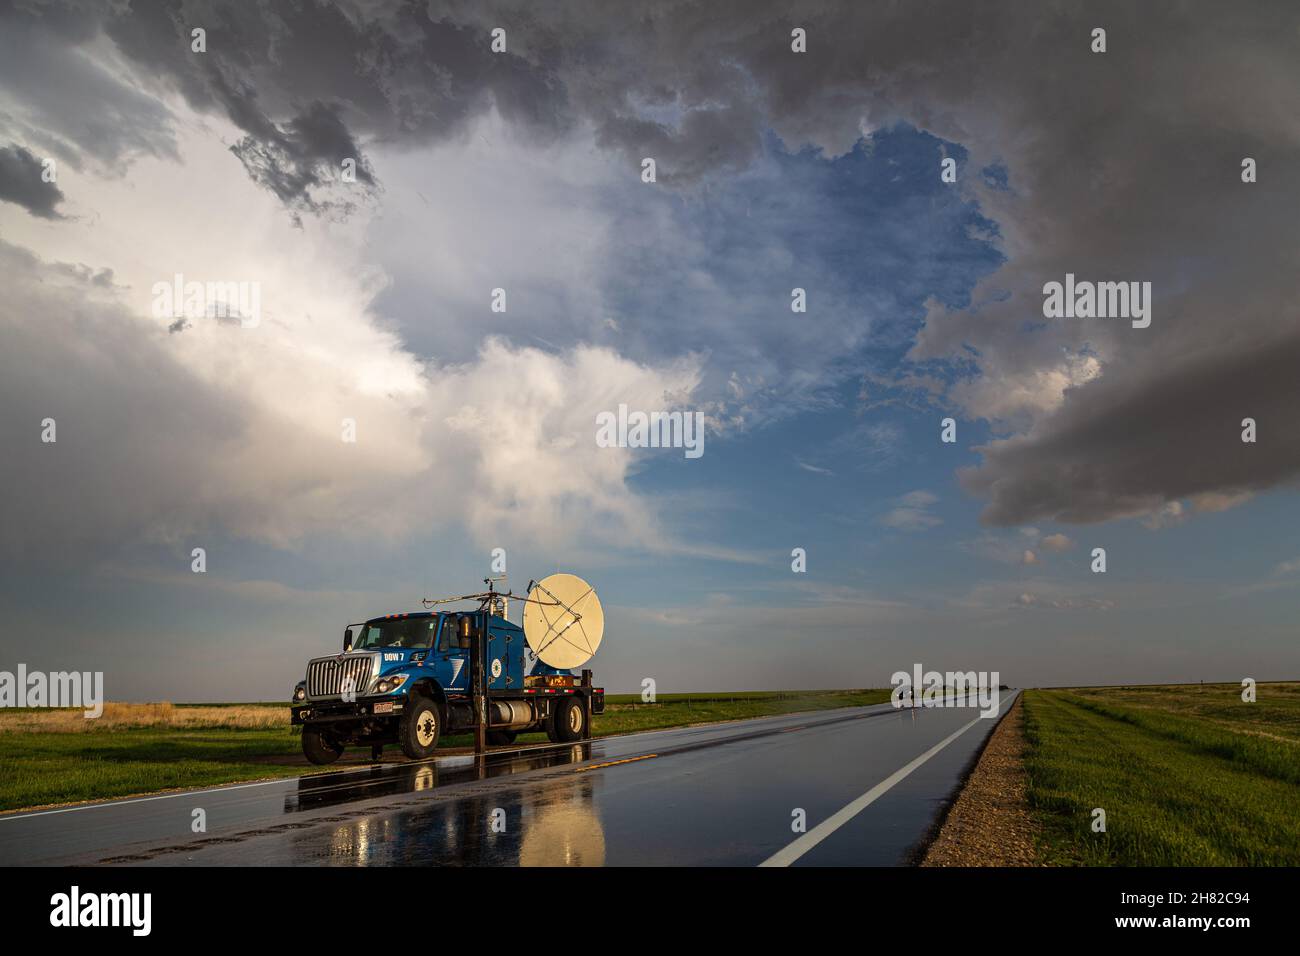 Un camion Doppler sur roues balaie une tempête près de Wheeler, Kansas, le 23 mai 2020. Banque D'Images